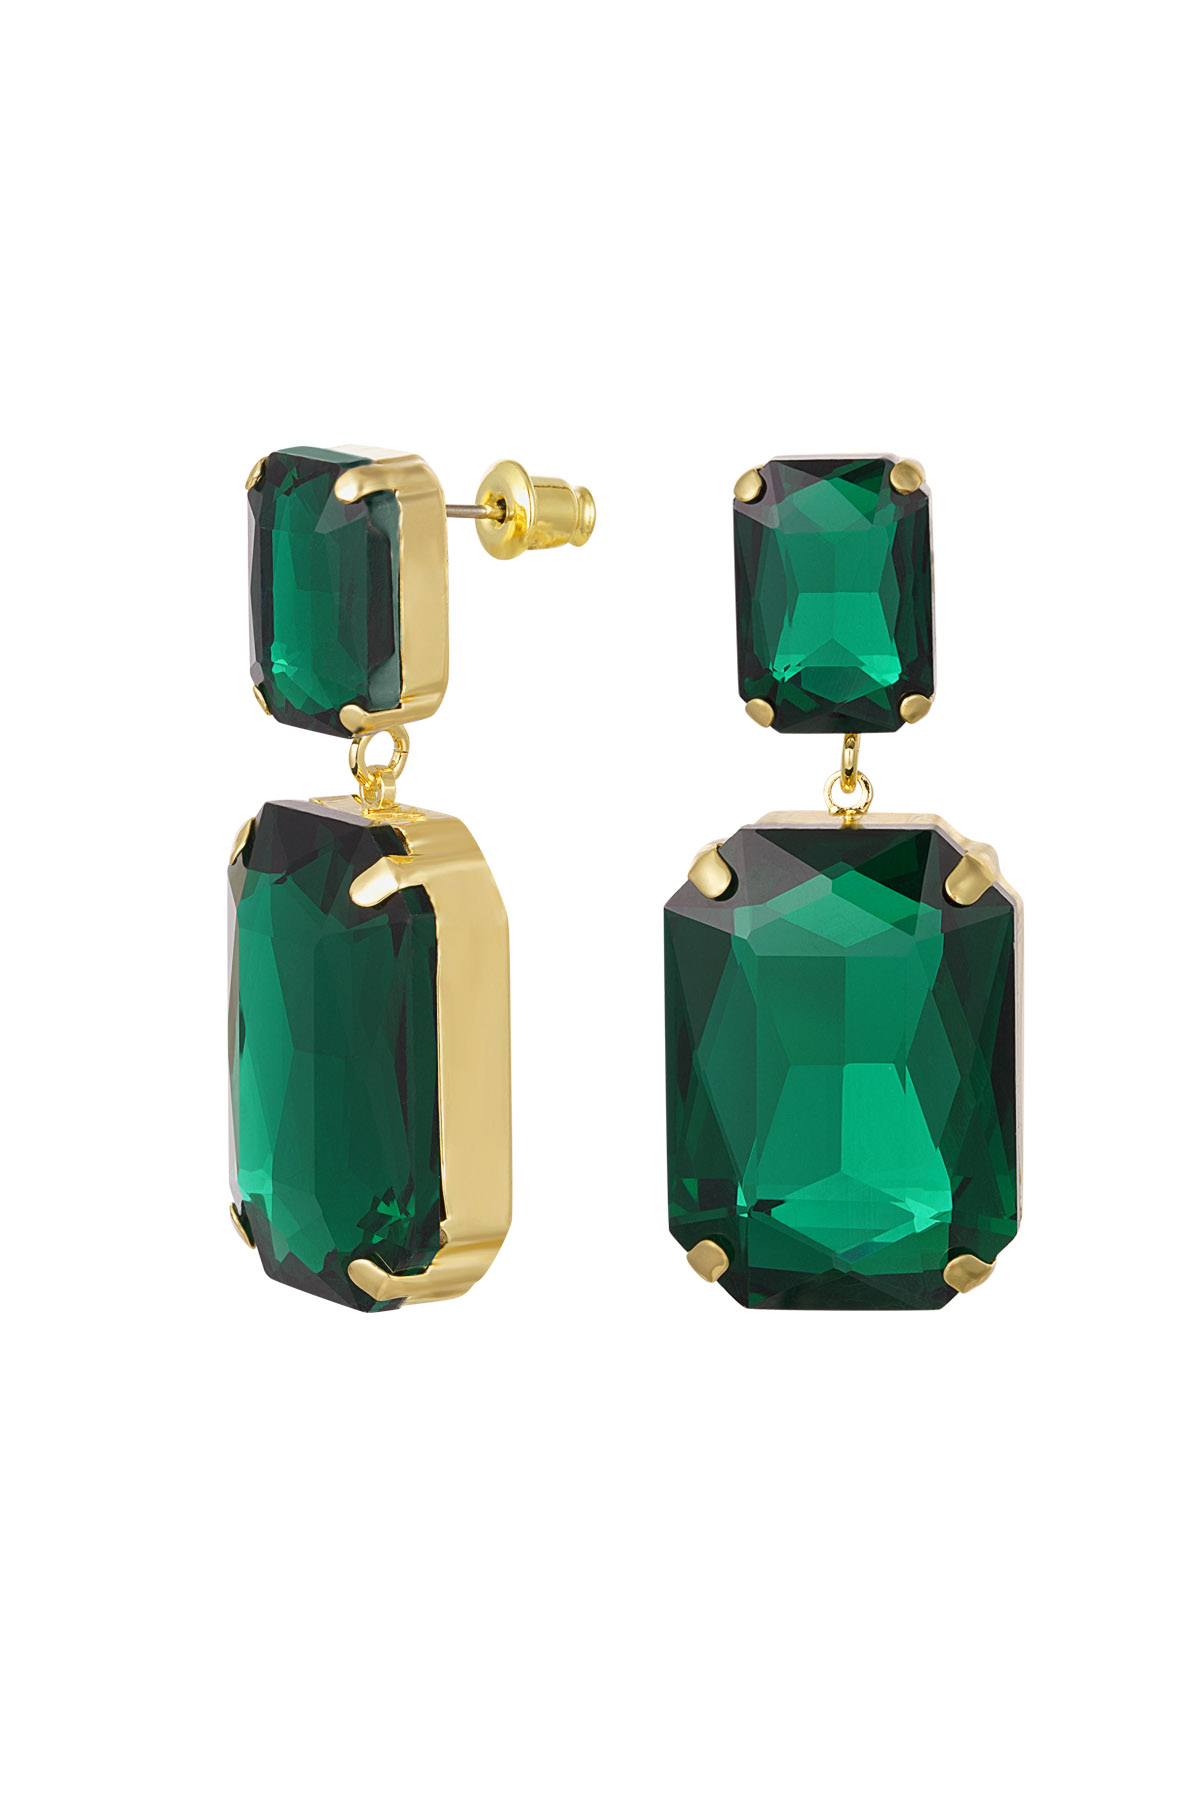 Pendientes 2 perlas de vidrio - verde y dorado Perlas de vidrio h5 